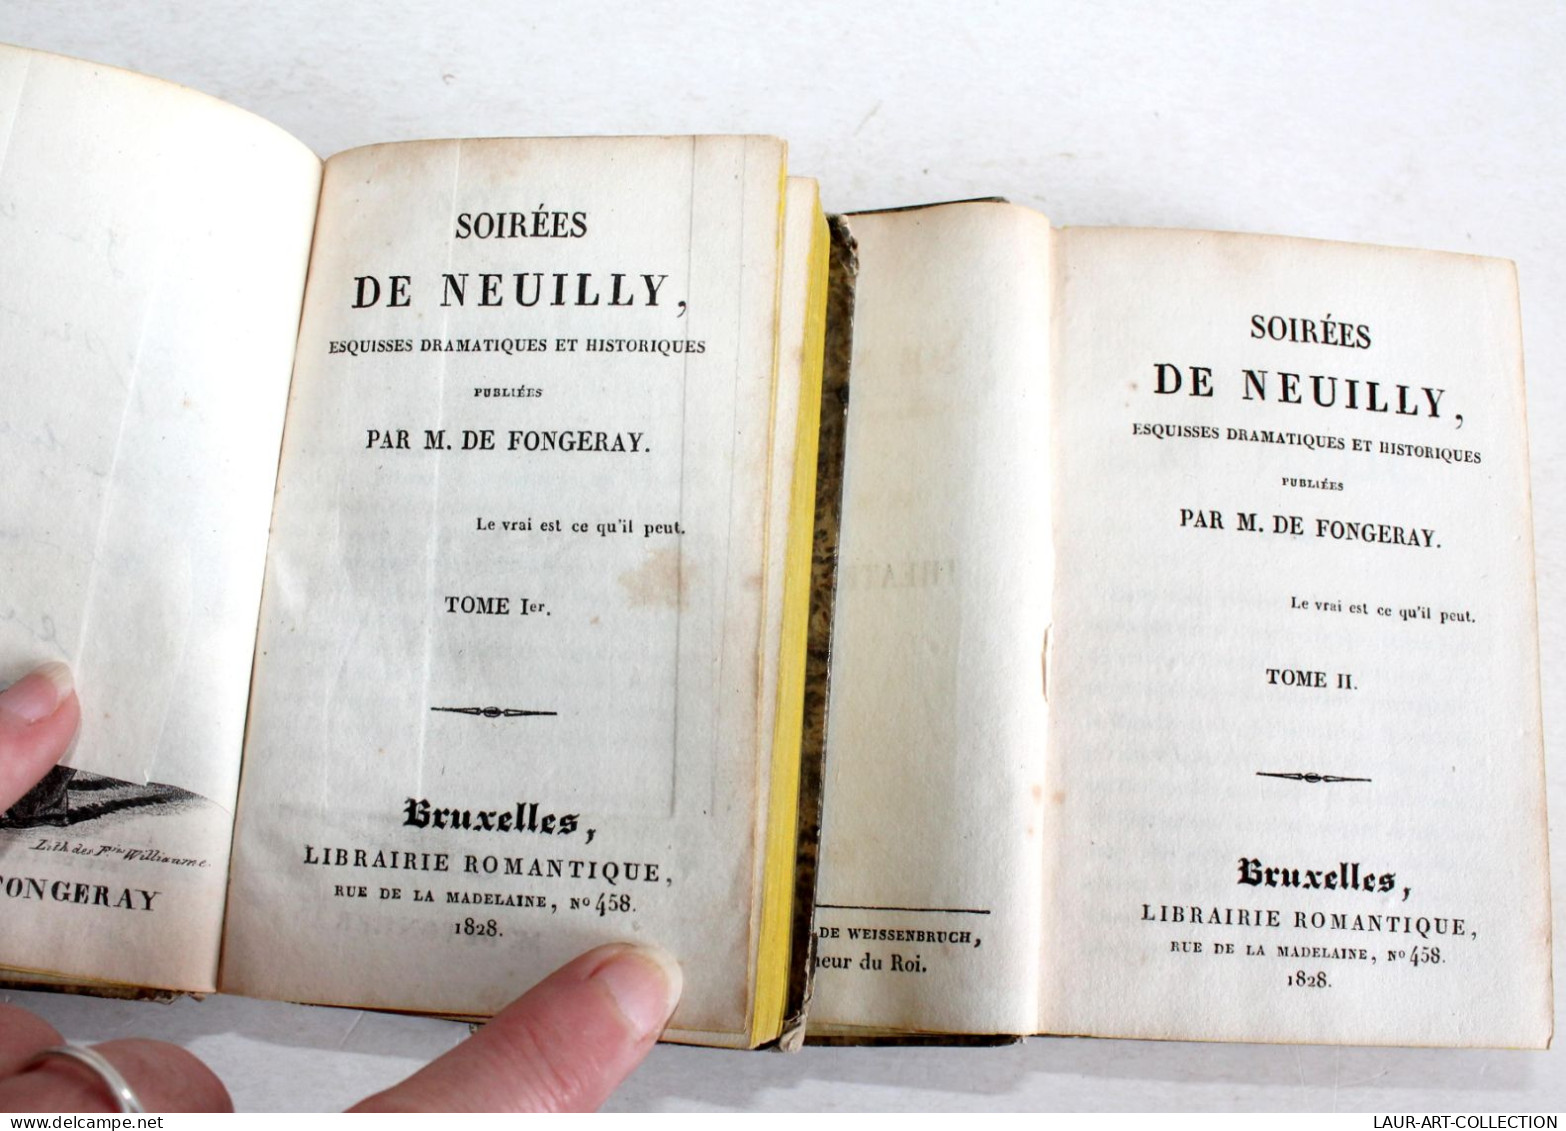 RARE EO + ENVOI D'AUTEUR SOIREES DE NEUILLY ESQUISSE DRAMATIQUE DE FONGERAY 1828 / ANCIEN LIVRE XIXe SIECLE (1803.259 - Autographed